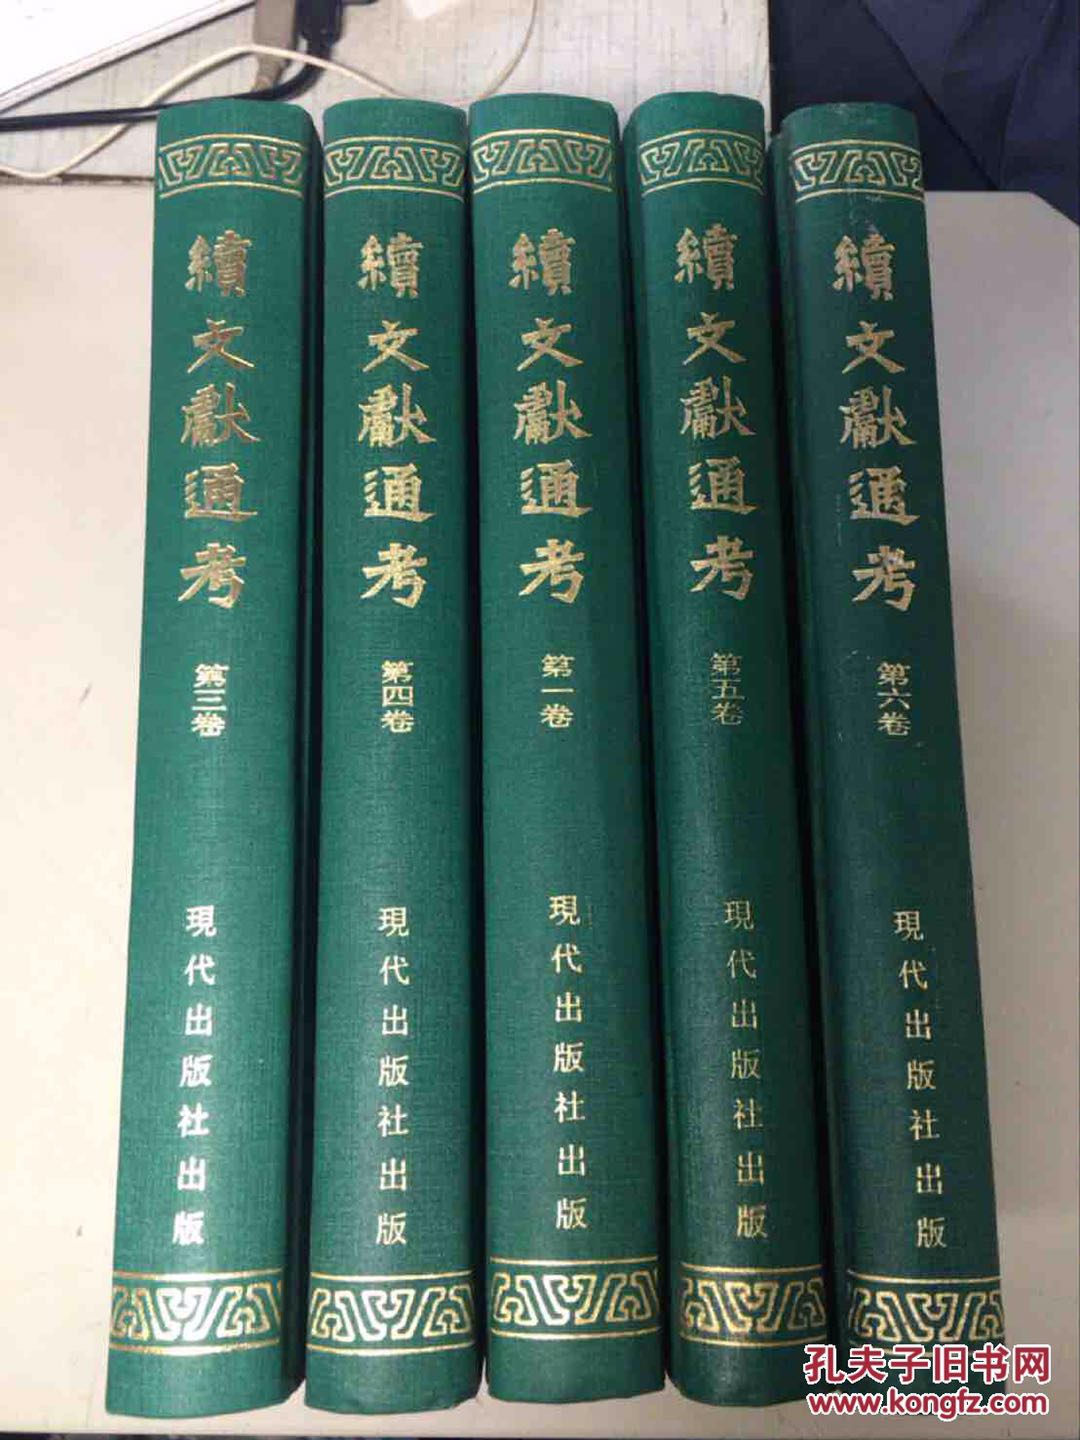 北京 马连洼 二手书 出版社新书 图书馆旧书收二手书 图书